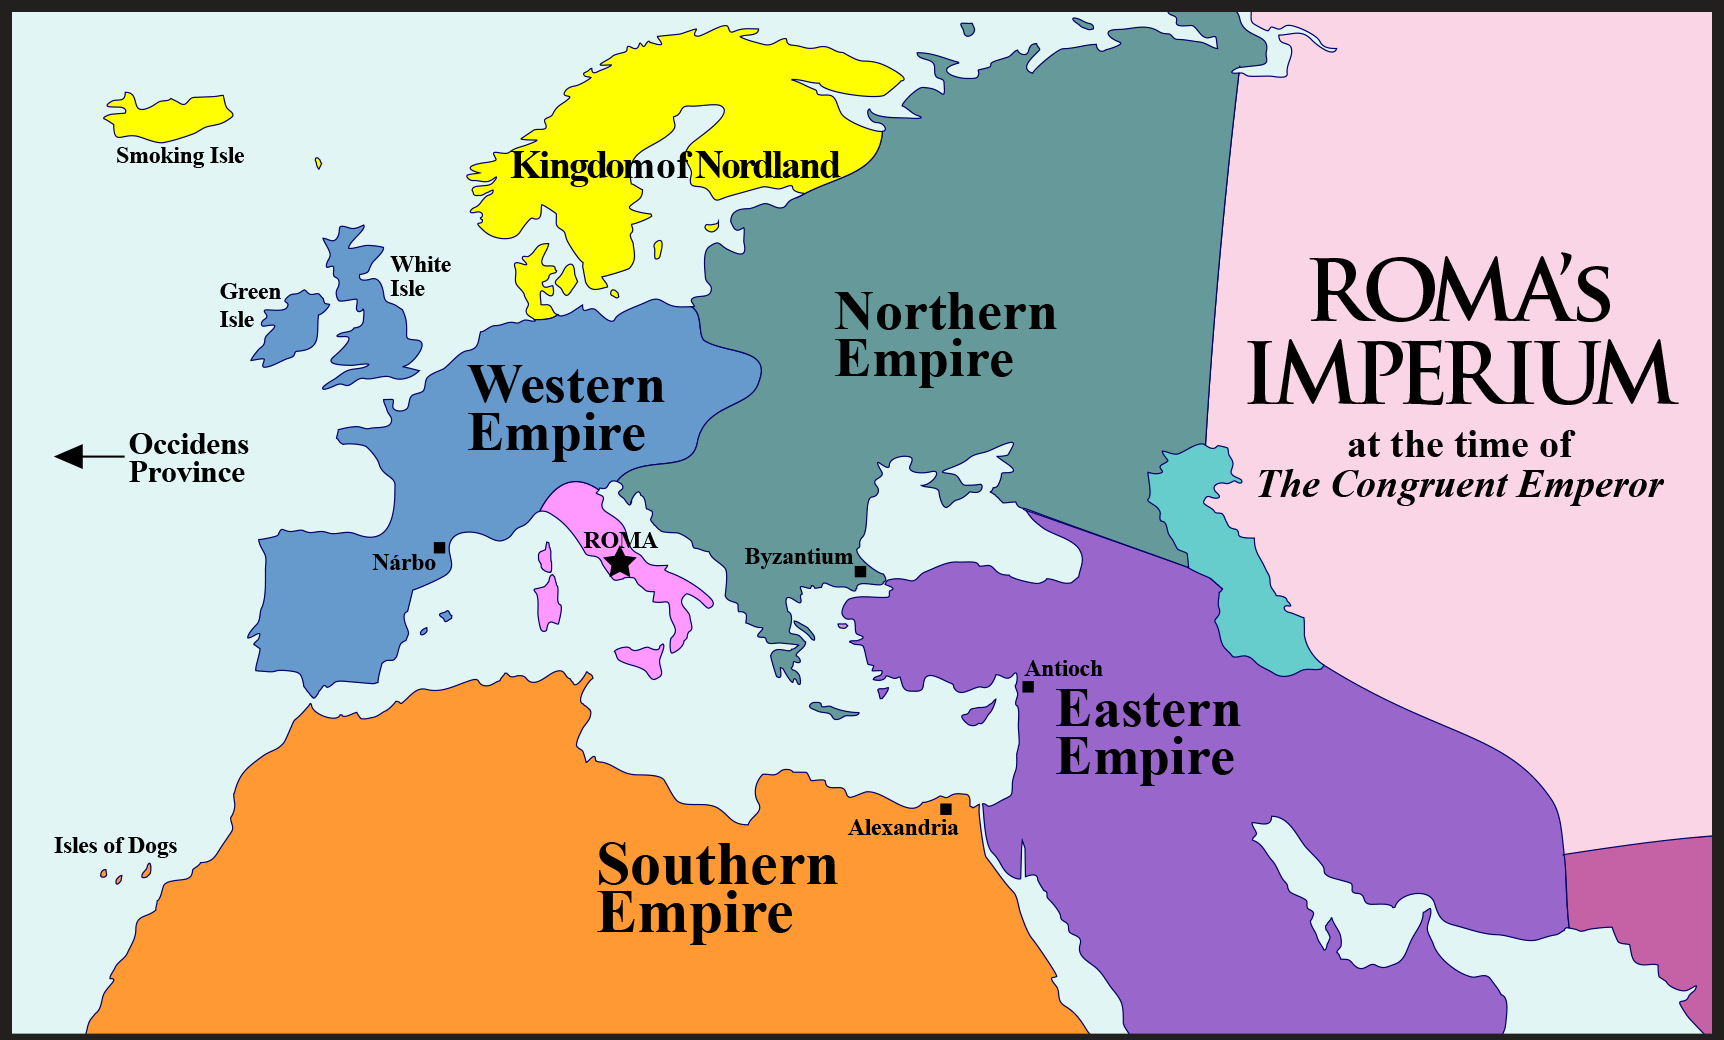 Roma's Imperium